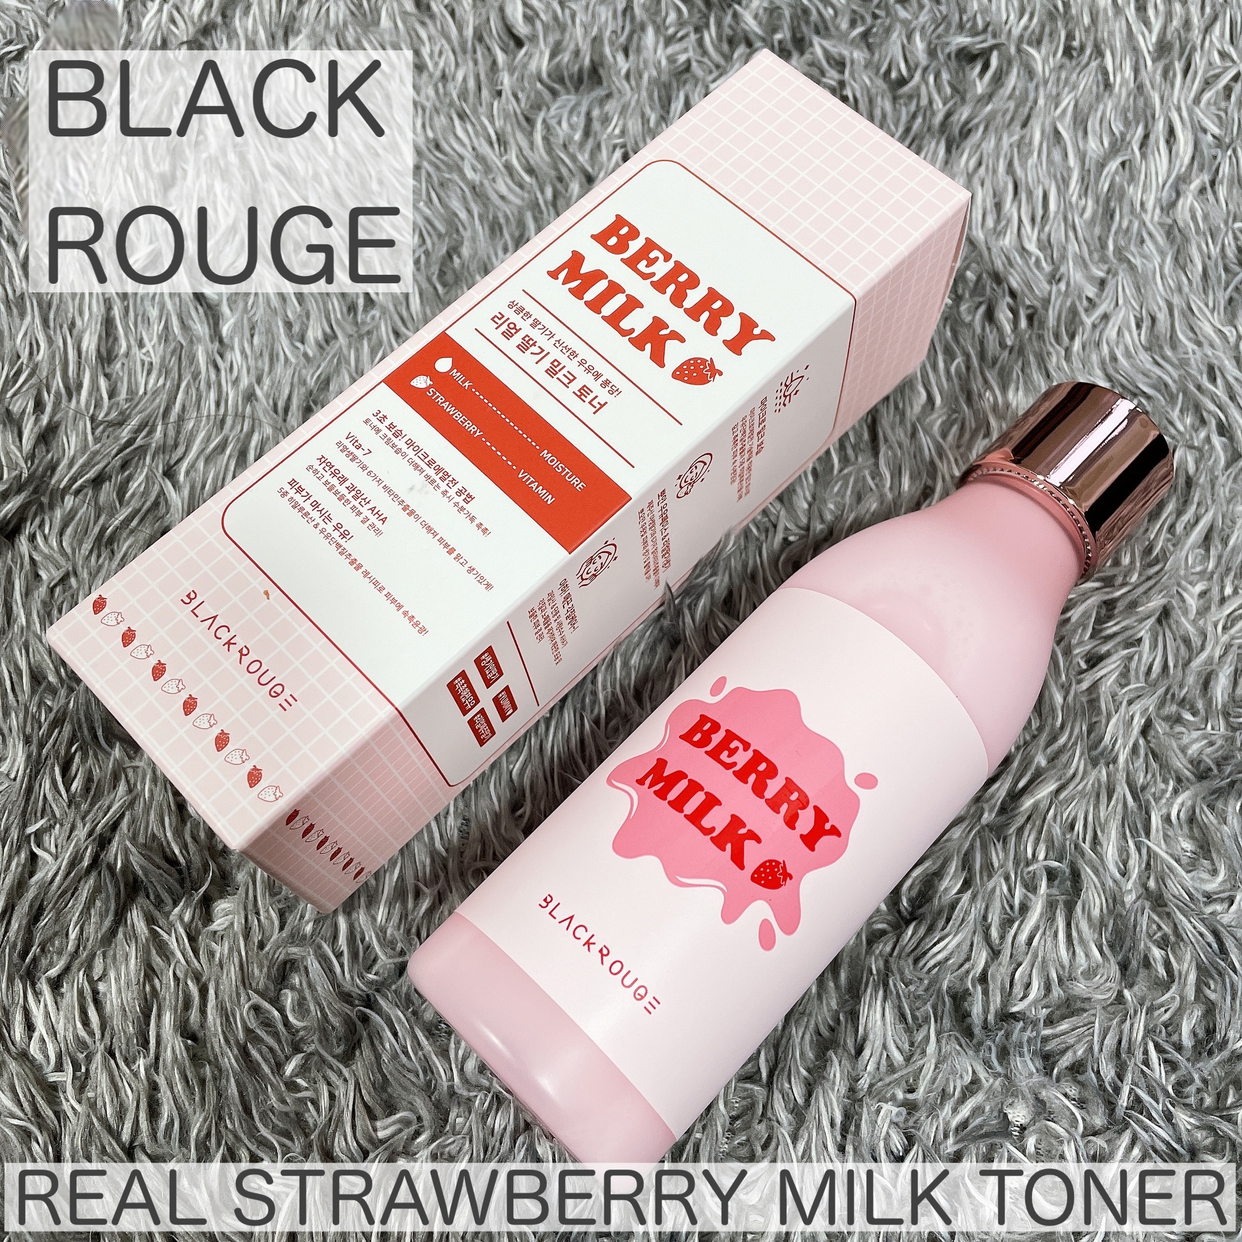 BLACK ROUGE(ブラック ルージュ) リアル ストロベリー ミルクトナーの良い点・メリットに関するけいさんの口コミ画像1